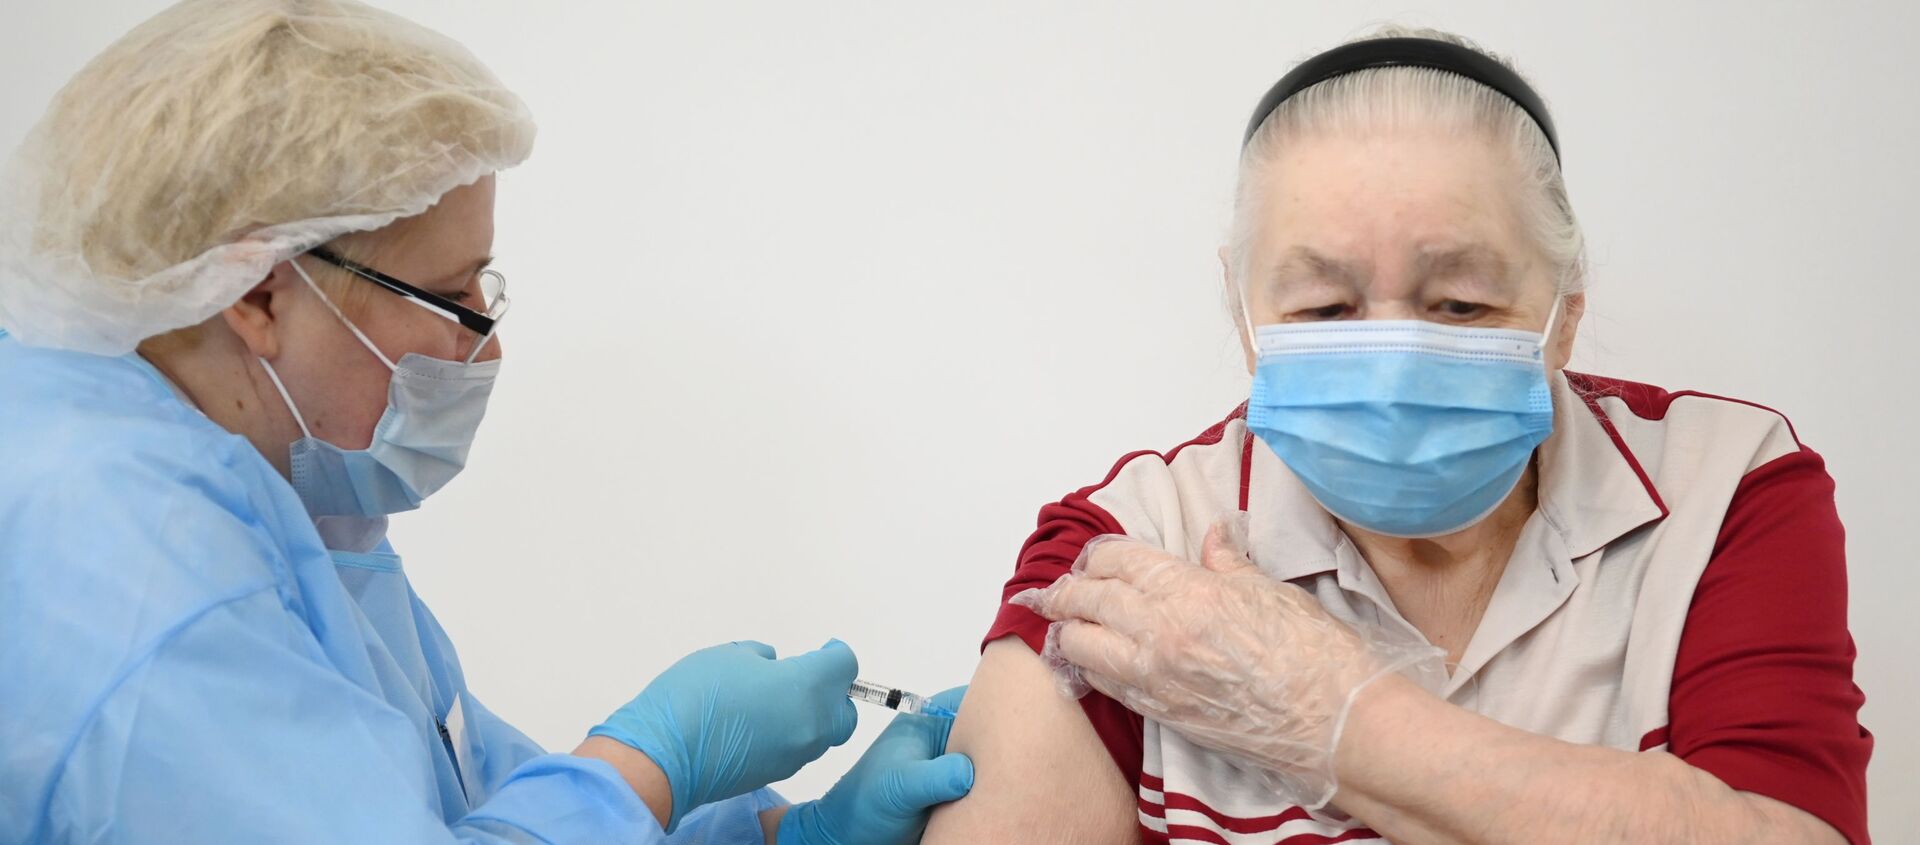 Пожилая женщина вакцинируется от COVID-19 российской вакциной Спутник V - Sputnik Беларусь, 1920, 30.03.2021